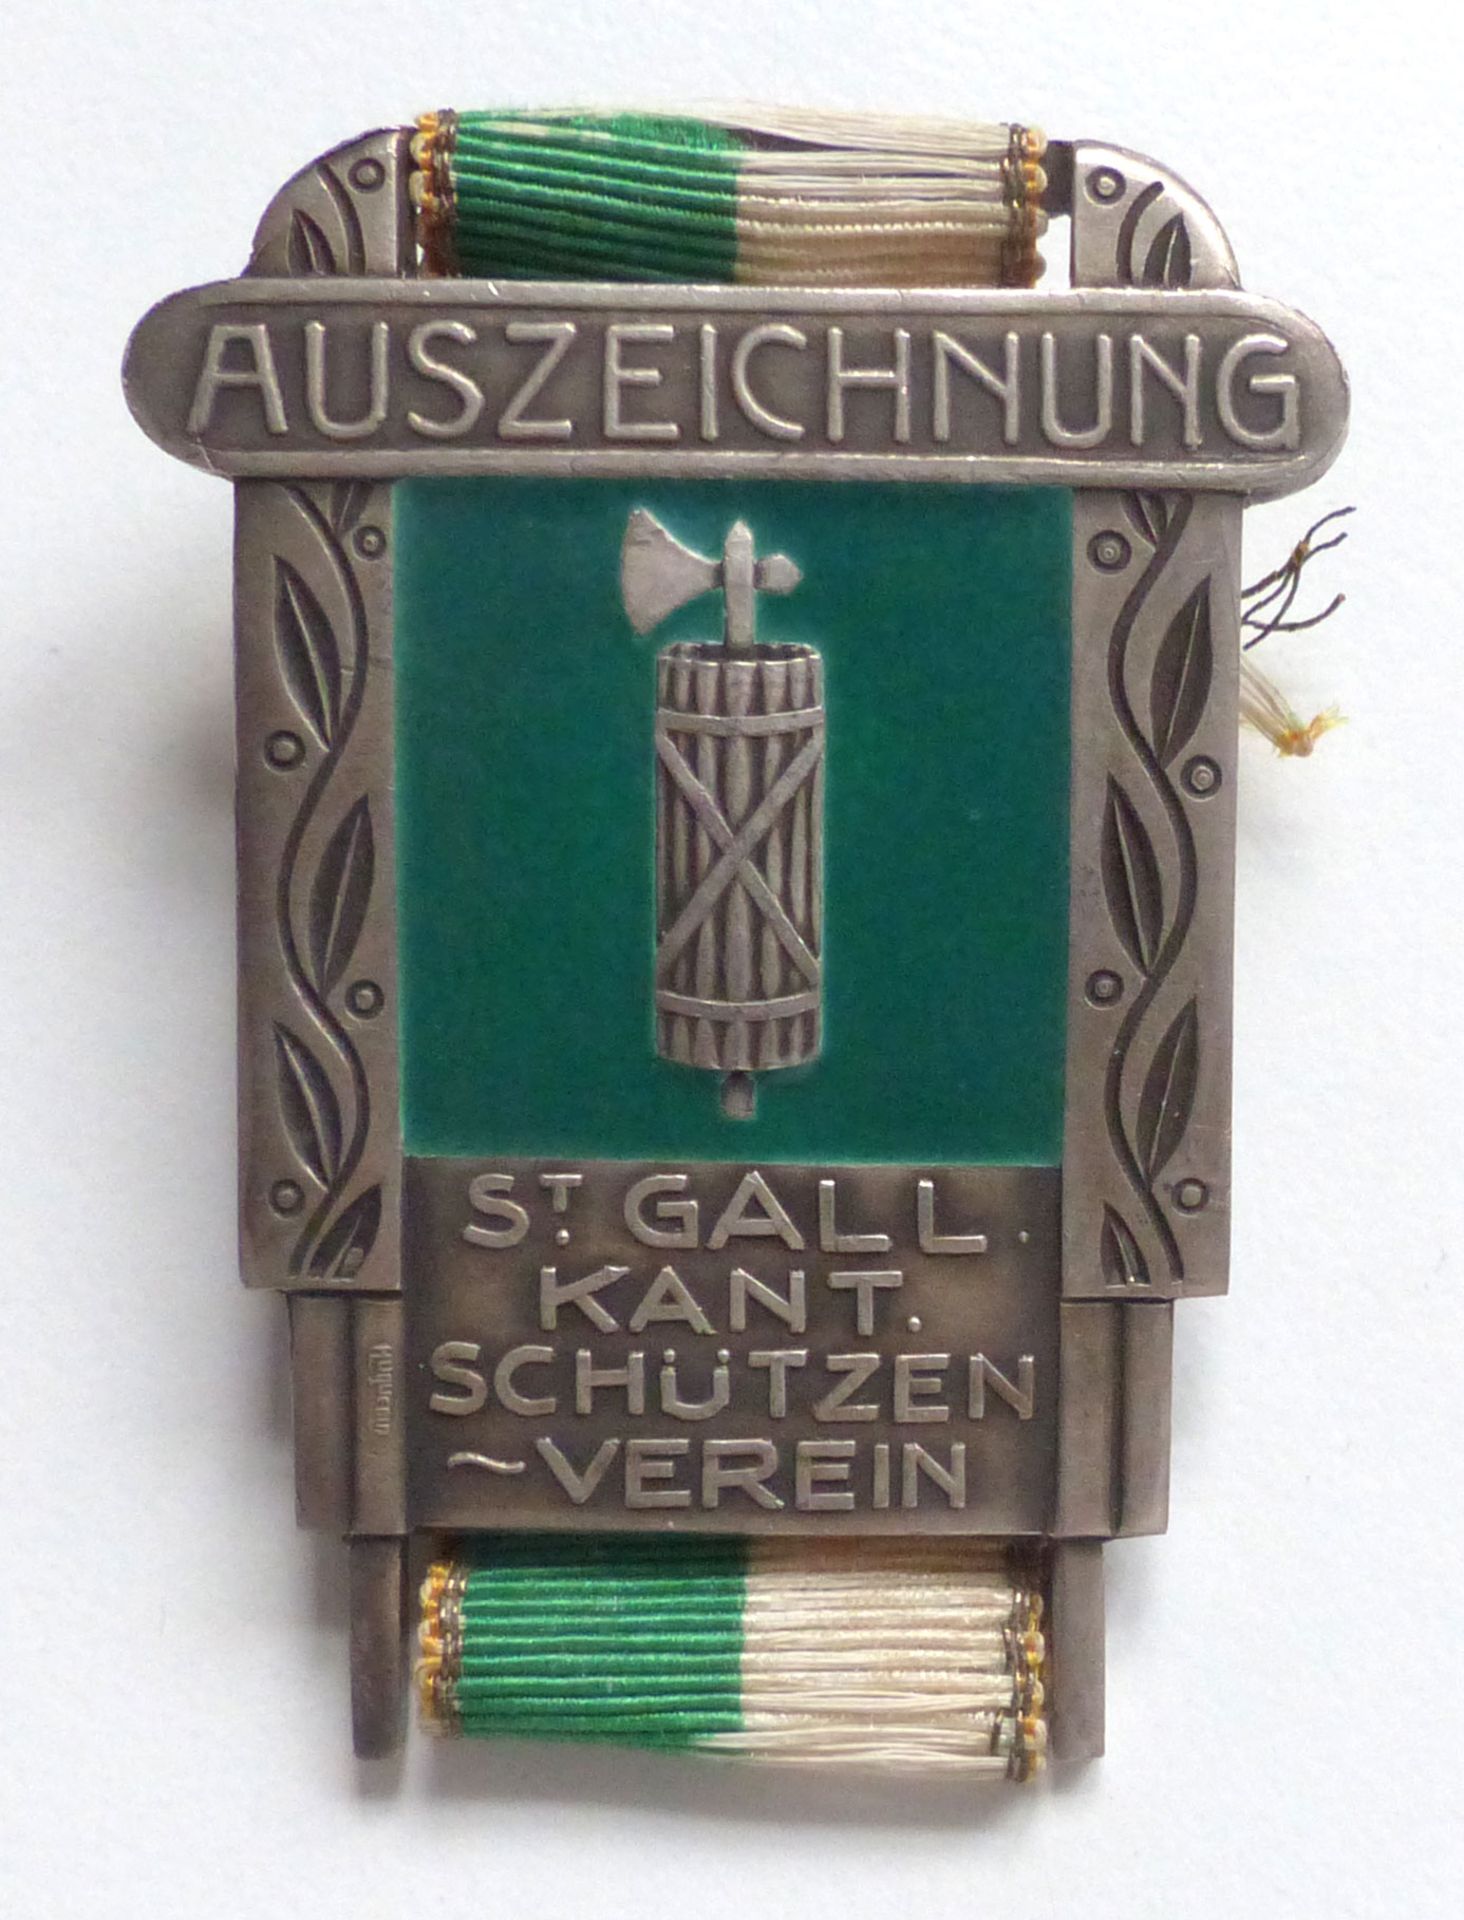 Schützen CH-St. Gallen Schützenverein Auszeichnung Plakette silber I-II